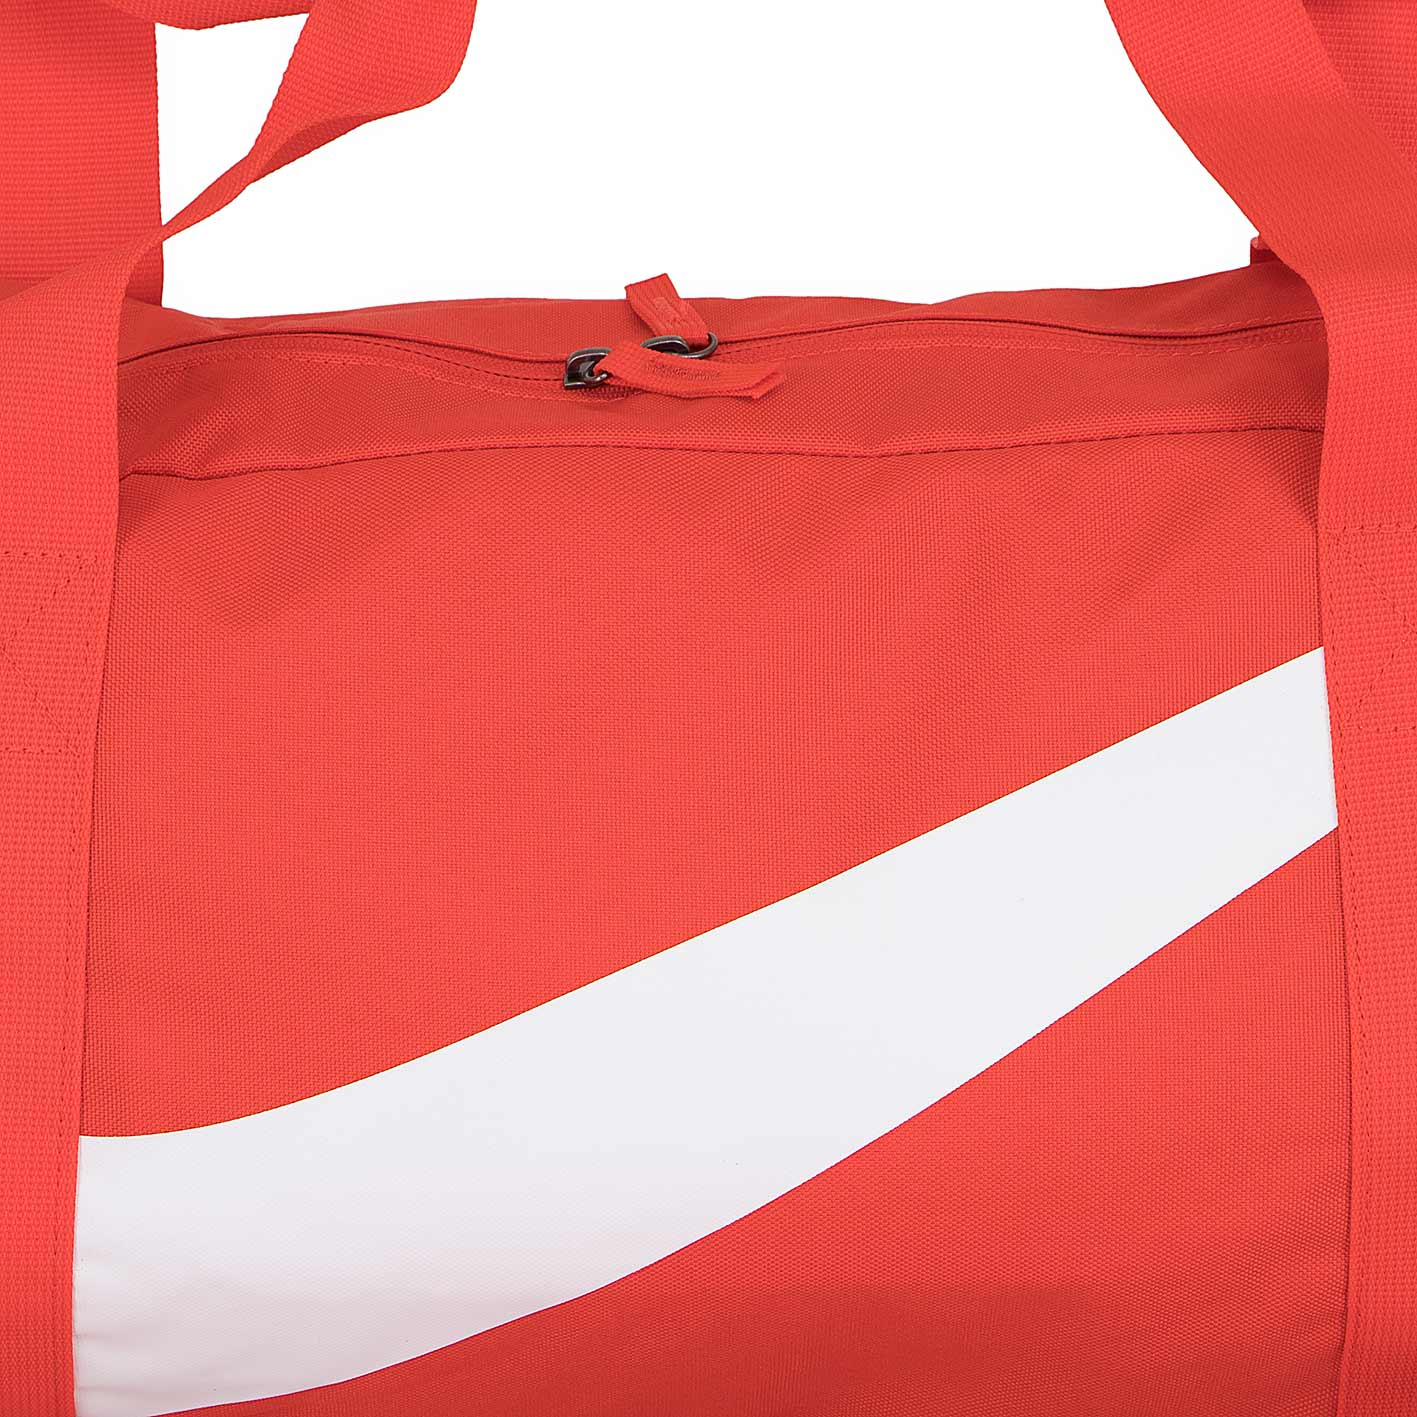 ☆ Nike Kinder Tasche Gym Club orange/weiß - hier bestellen!